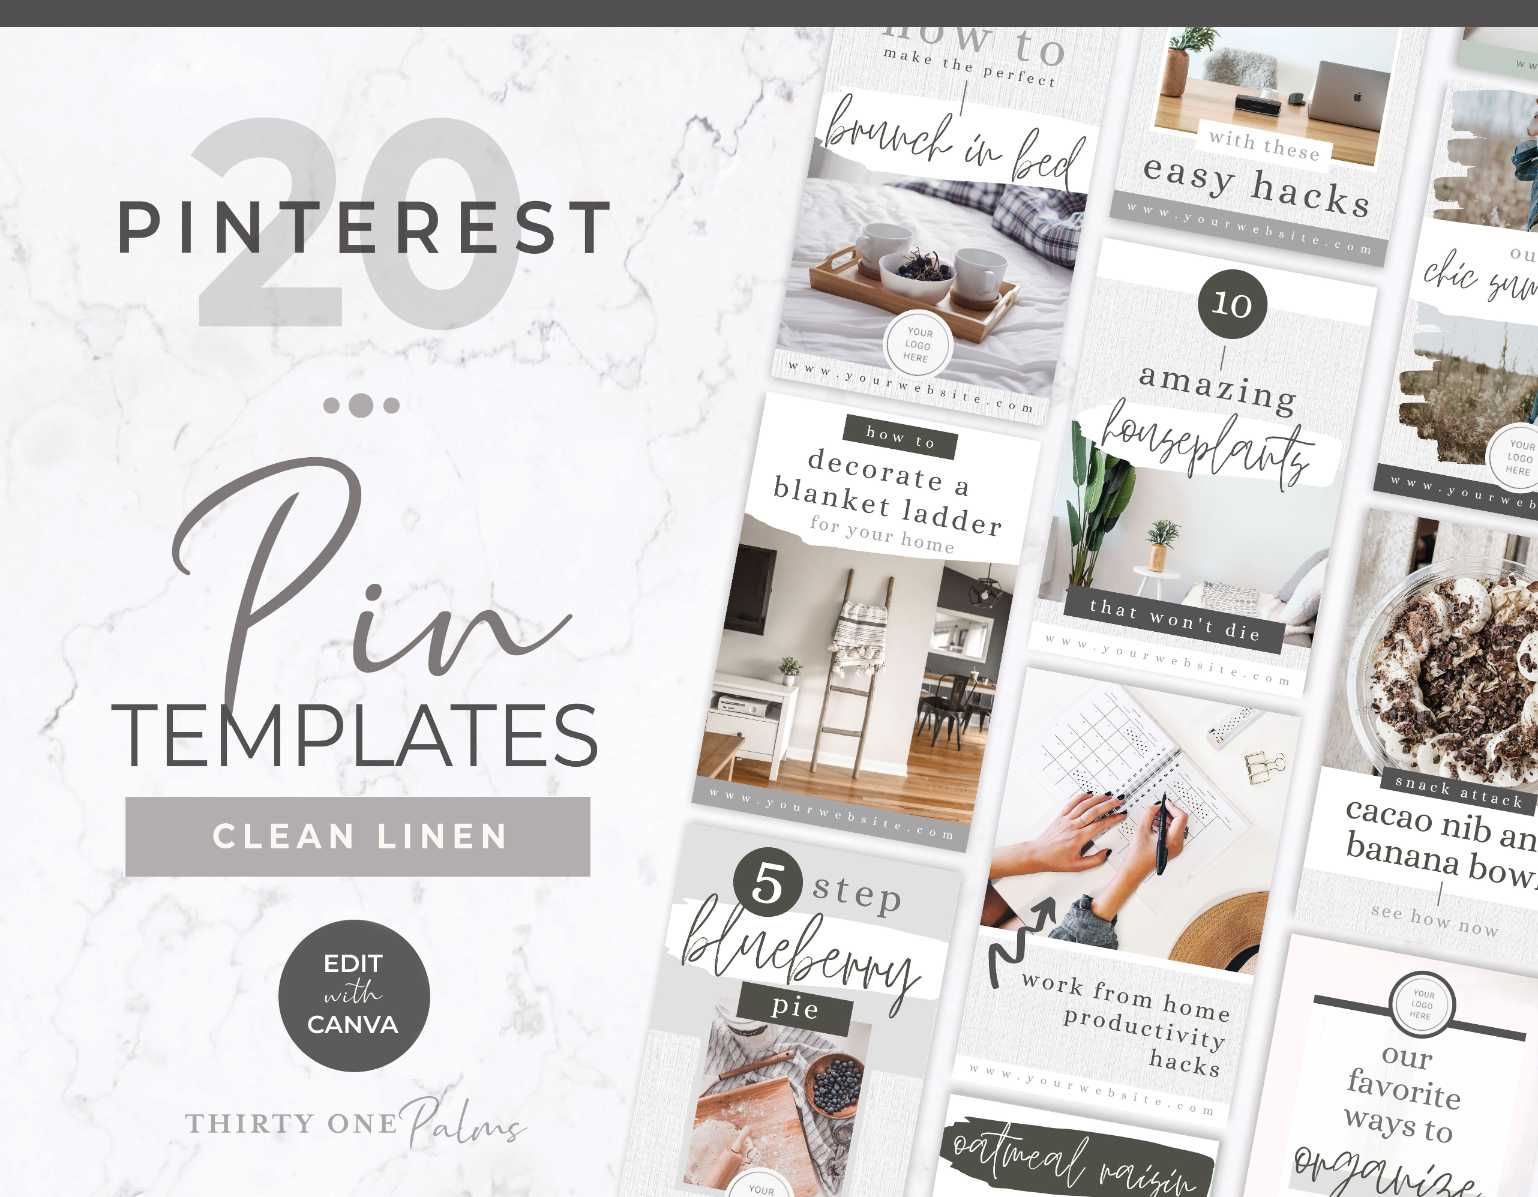 Pinterest Template Set for Canva- White Linen